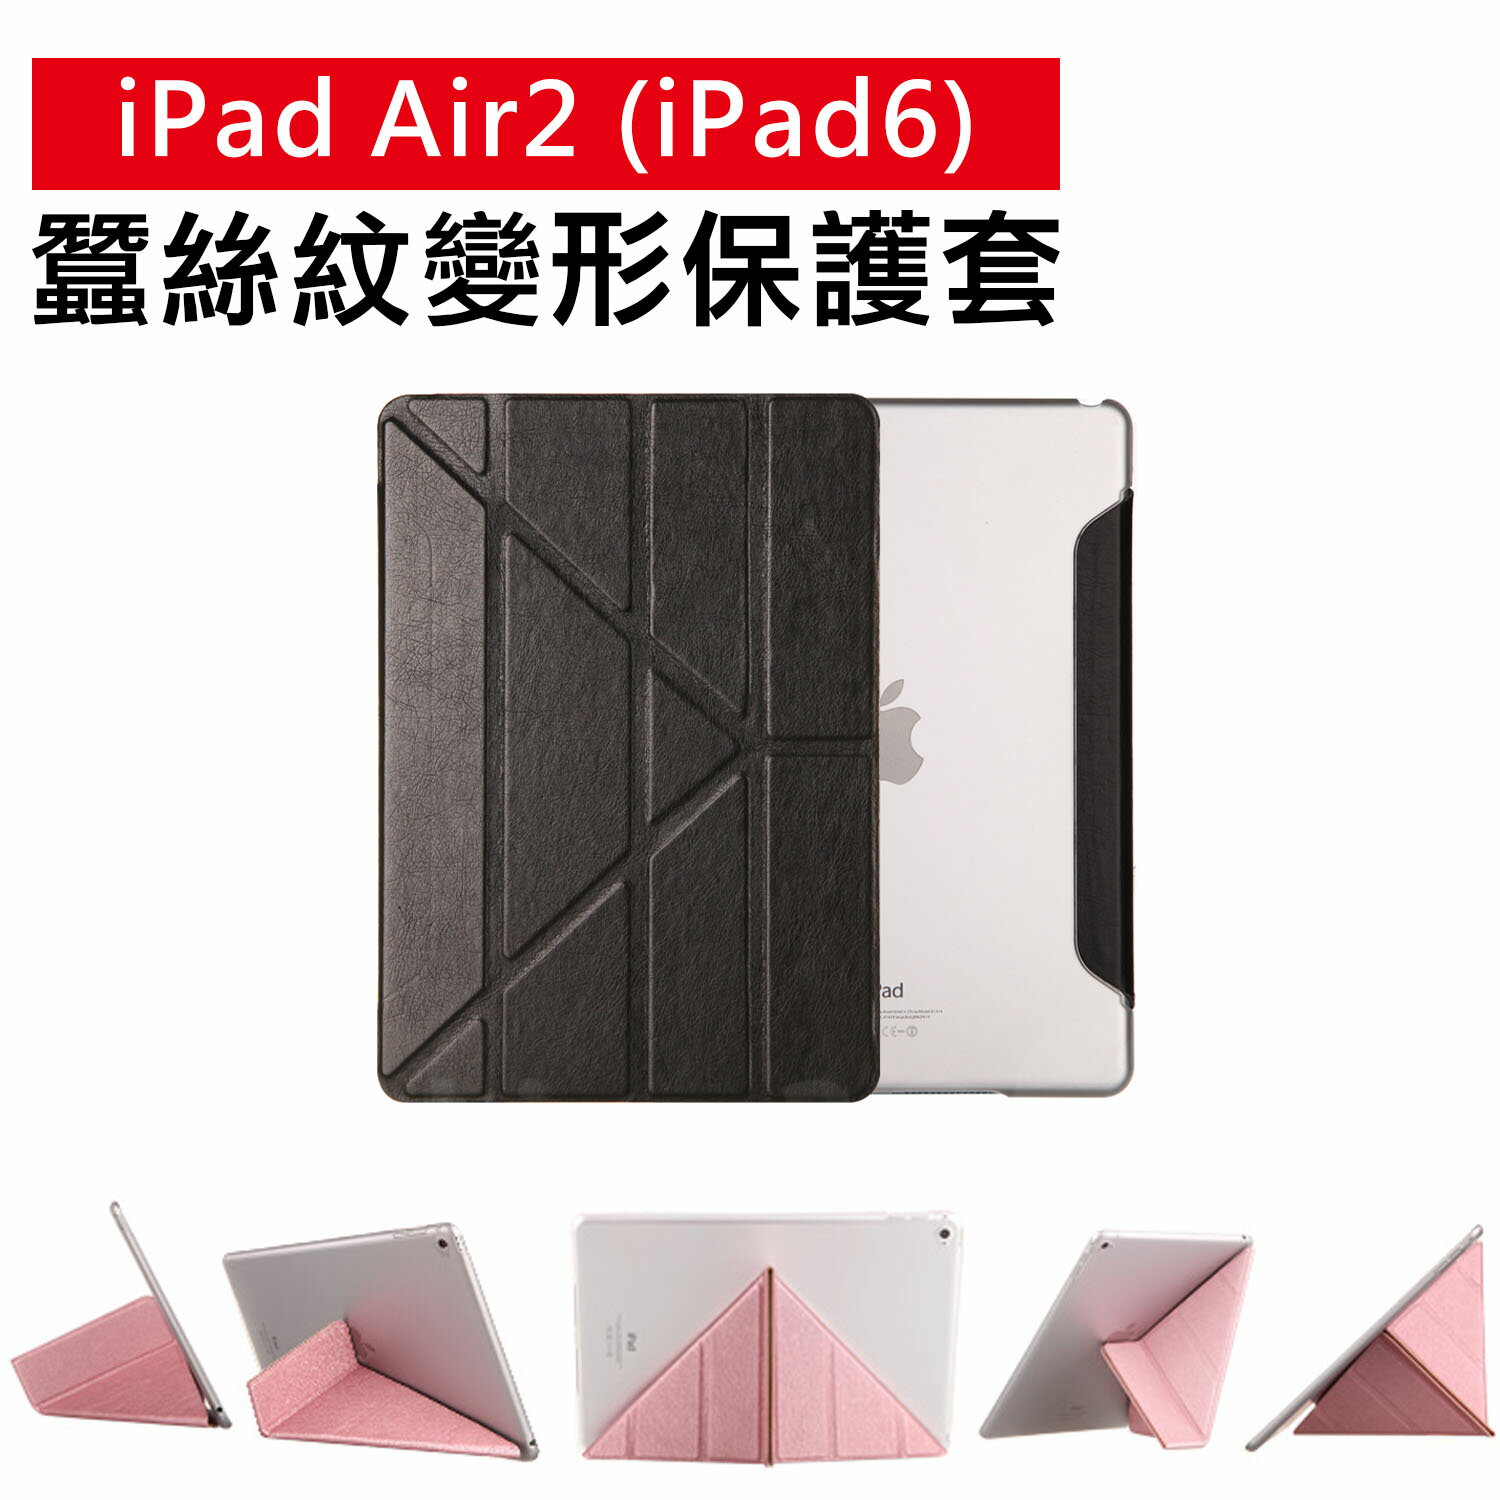 iPad Air 2 / iPad 6 專用 蠶絲紋 變形金剛皮套 【C-APL-P60】 多角度摺疊保護套 立架式皮套 Alice3C